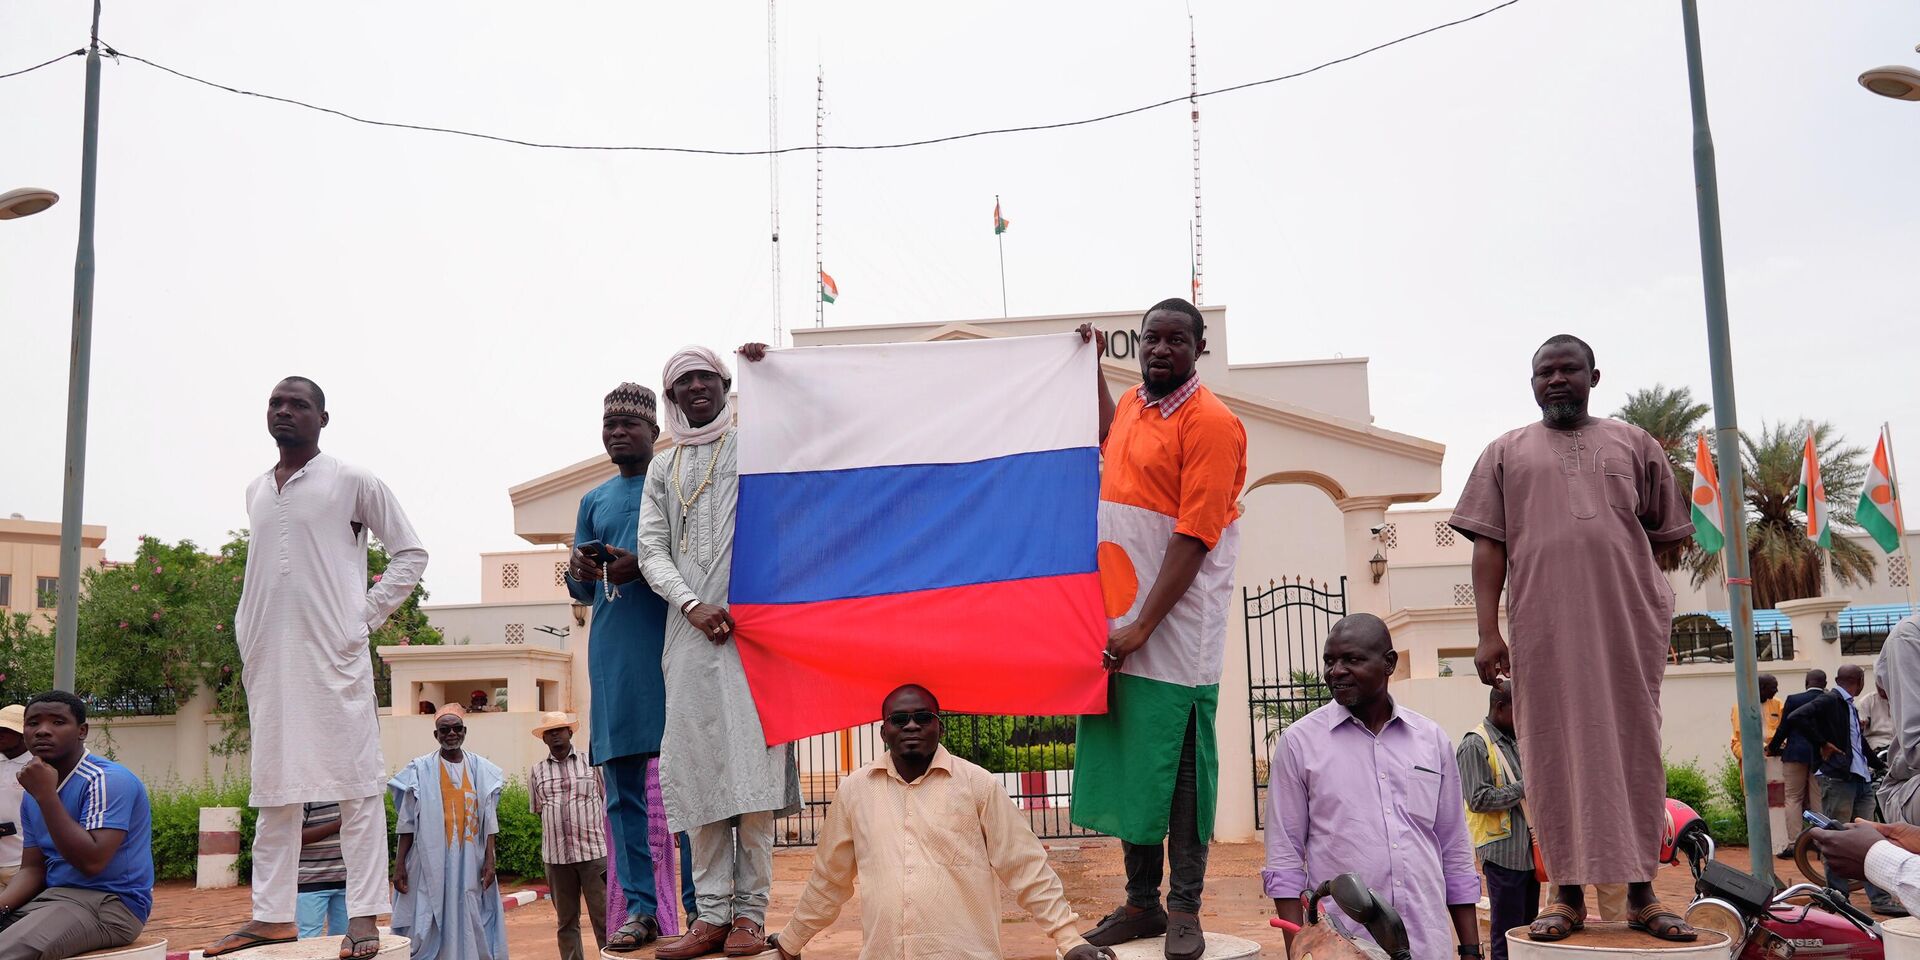 Участники демонстрации в Ниамее, Нигер. 27 июля 2023 года - ИноСМИ, 1920, 15.08.2023